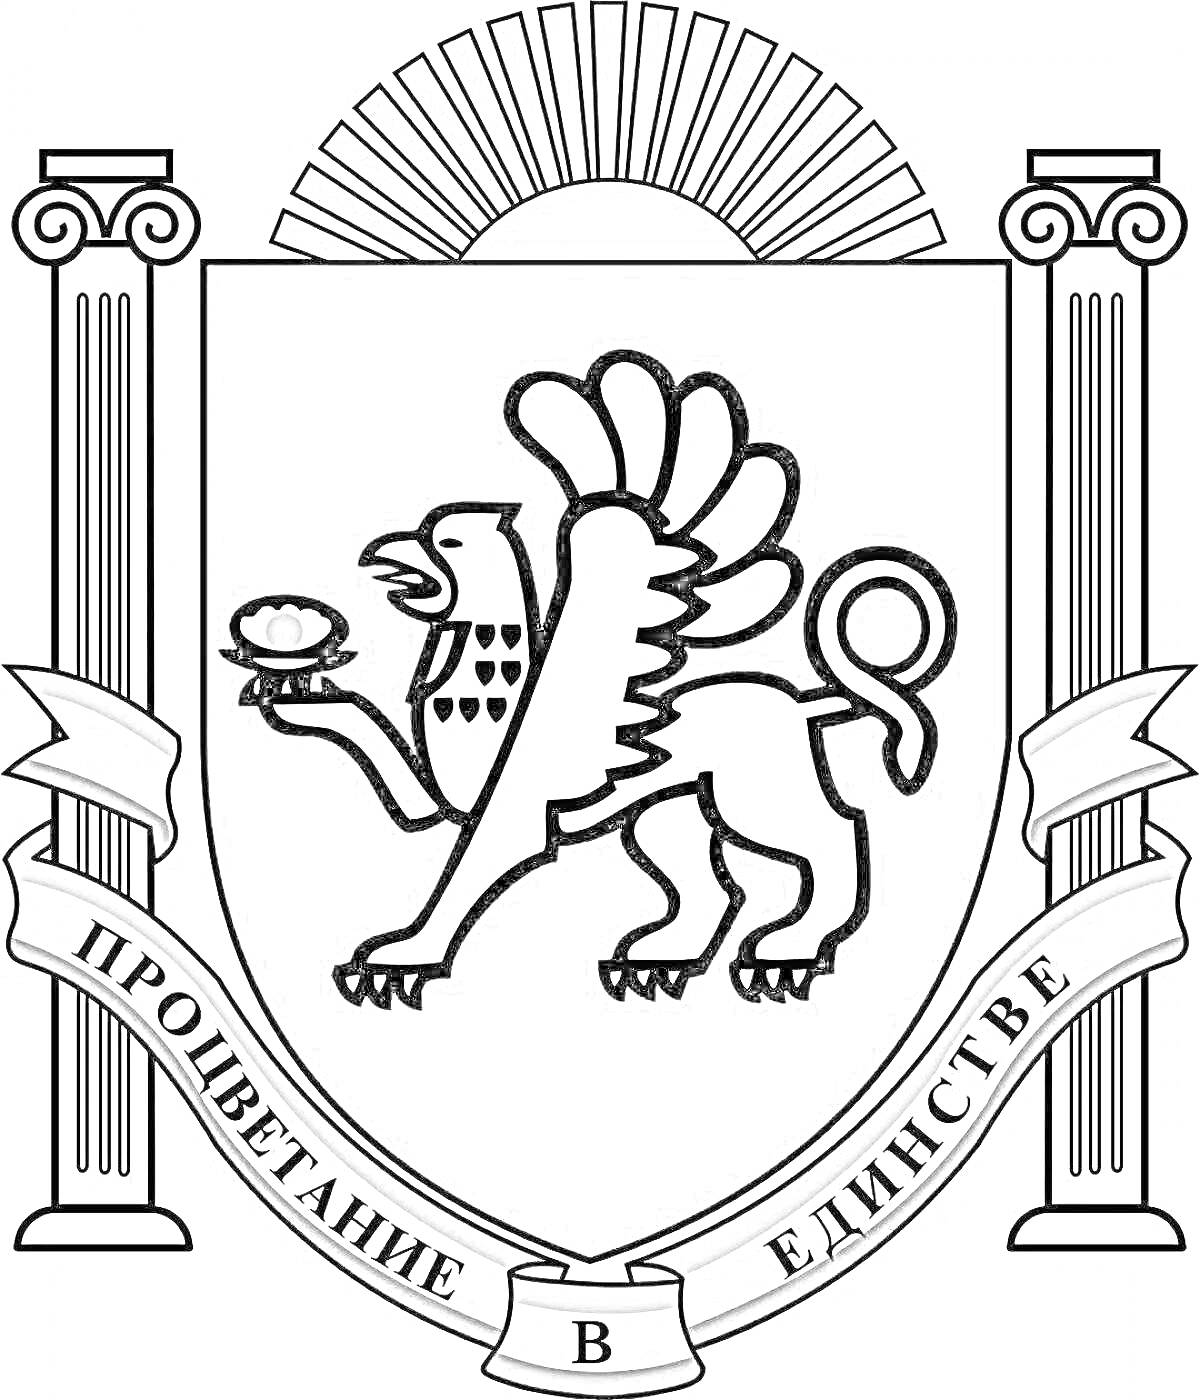 Герб Крыма, грифон с жемчужиной, столбы, восходящее солнце, лента с надписью 